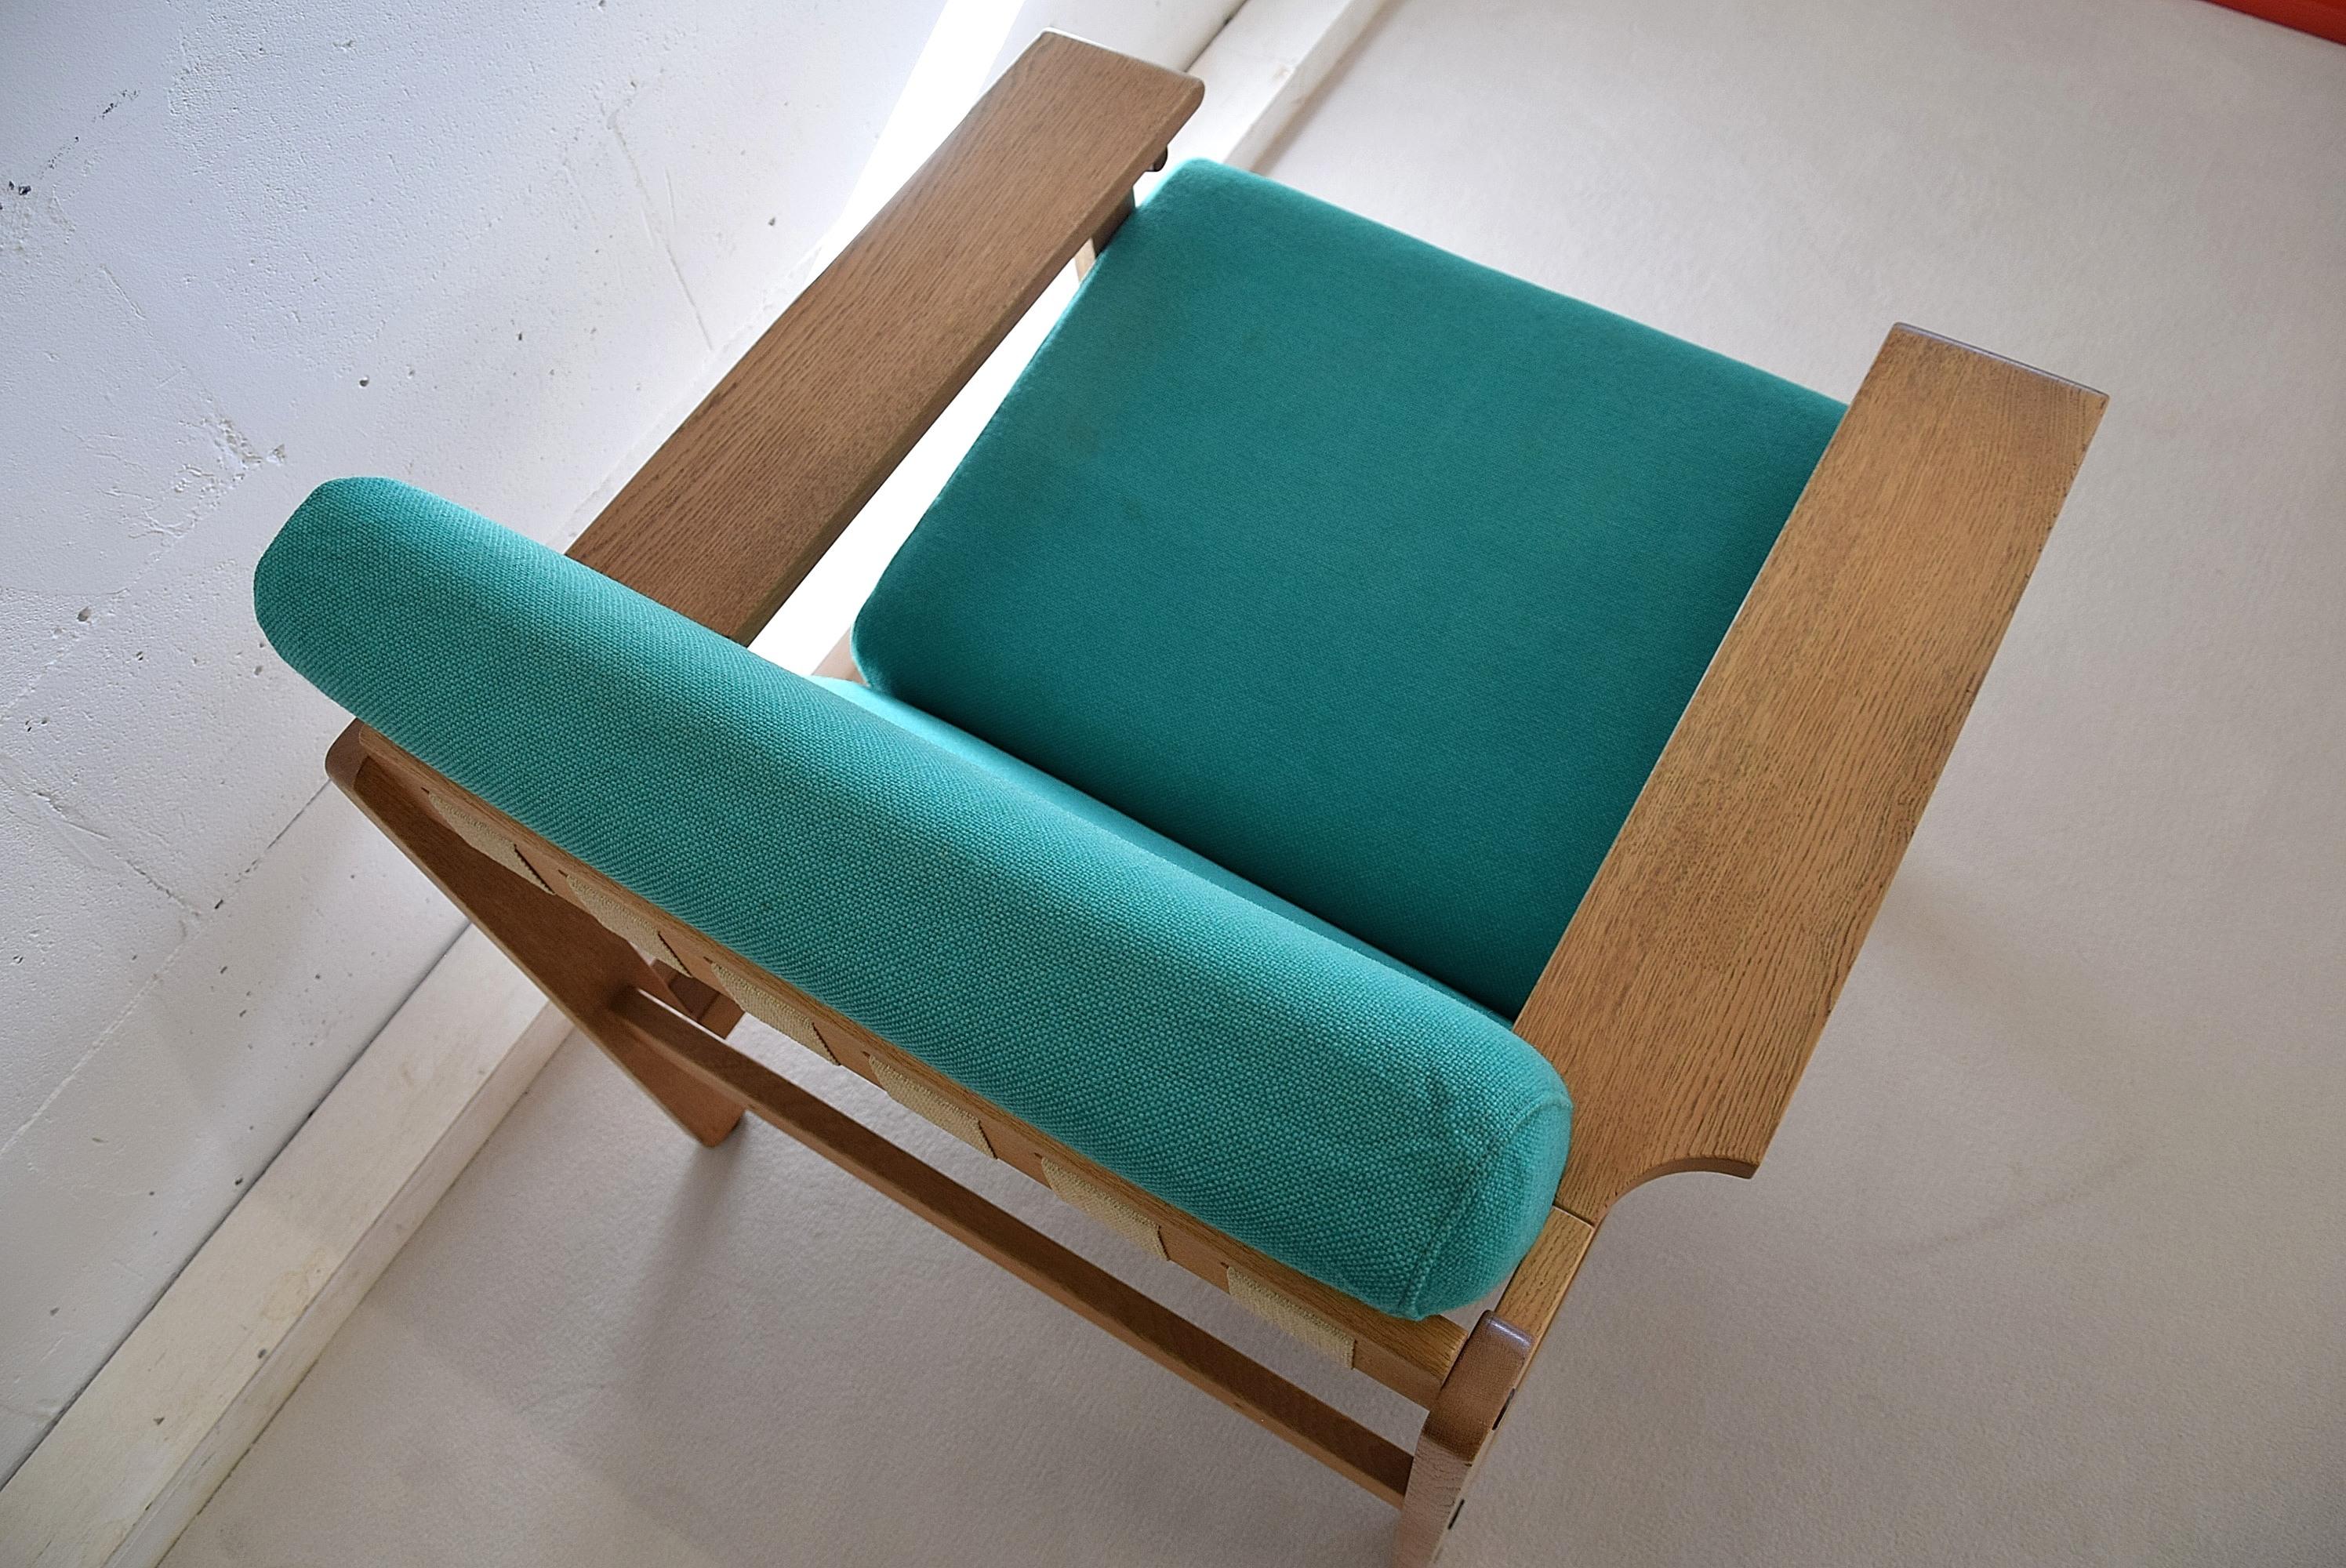 Dänisches Mid-Century Modern Lounge-Set, entworfen von Aksel Dahl in den 1960er Jahren.

Hervorragende Qualität und Konstruktion aus massiver Eiche in exzellentem Zustand mit der Original-Polsterung. Dieses Set wurde in den 70er Jahren